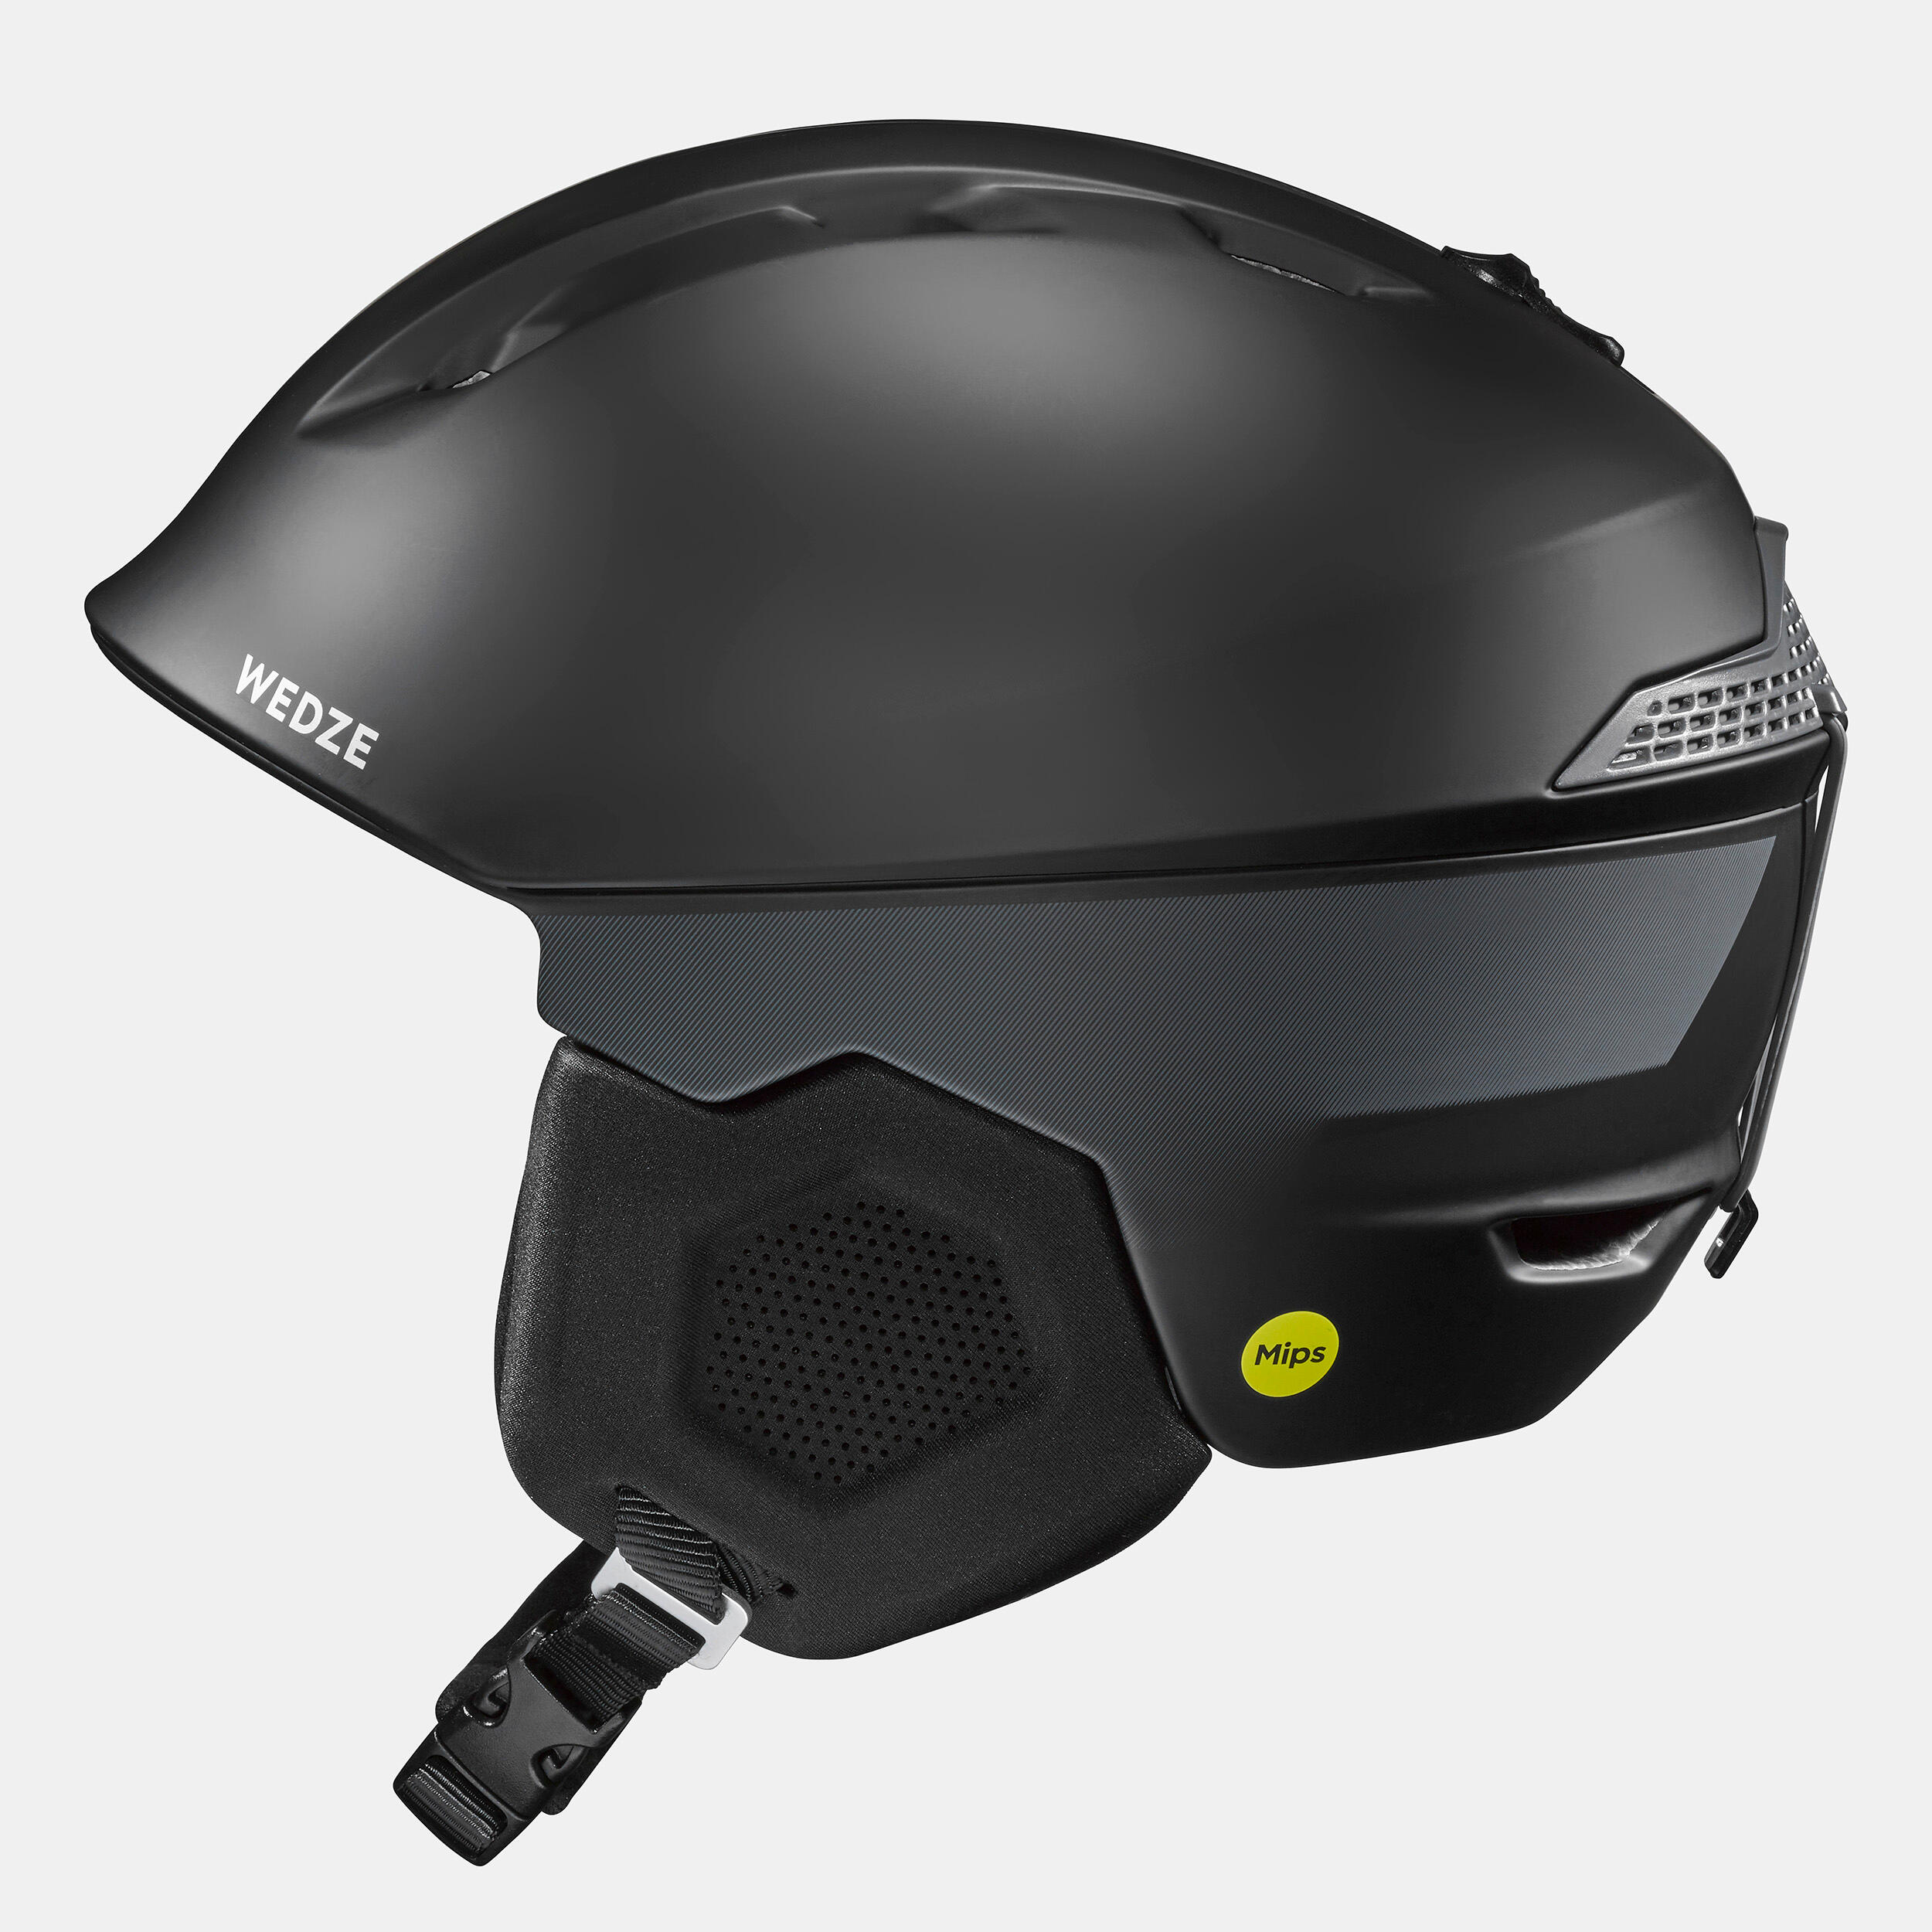 Ski helmet - PST 900 MIPS - BLACK 5/12